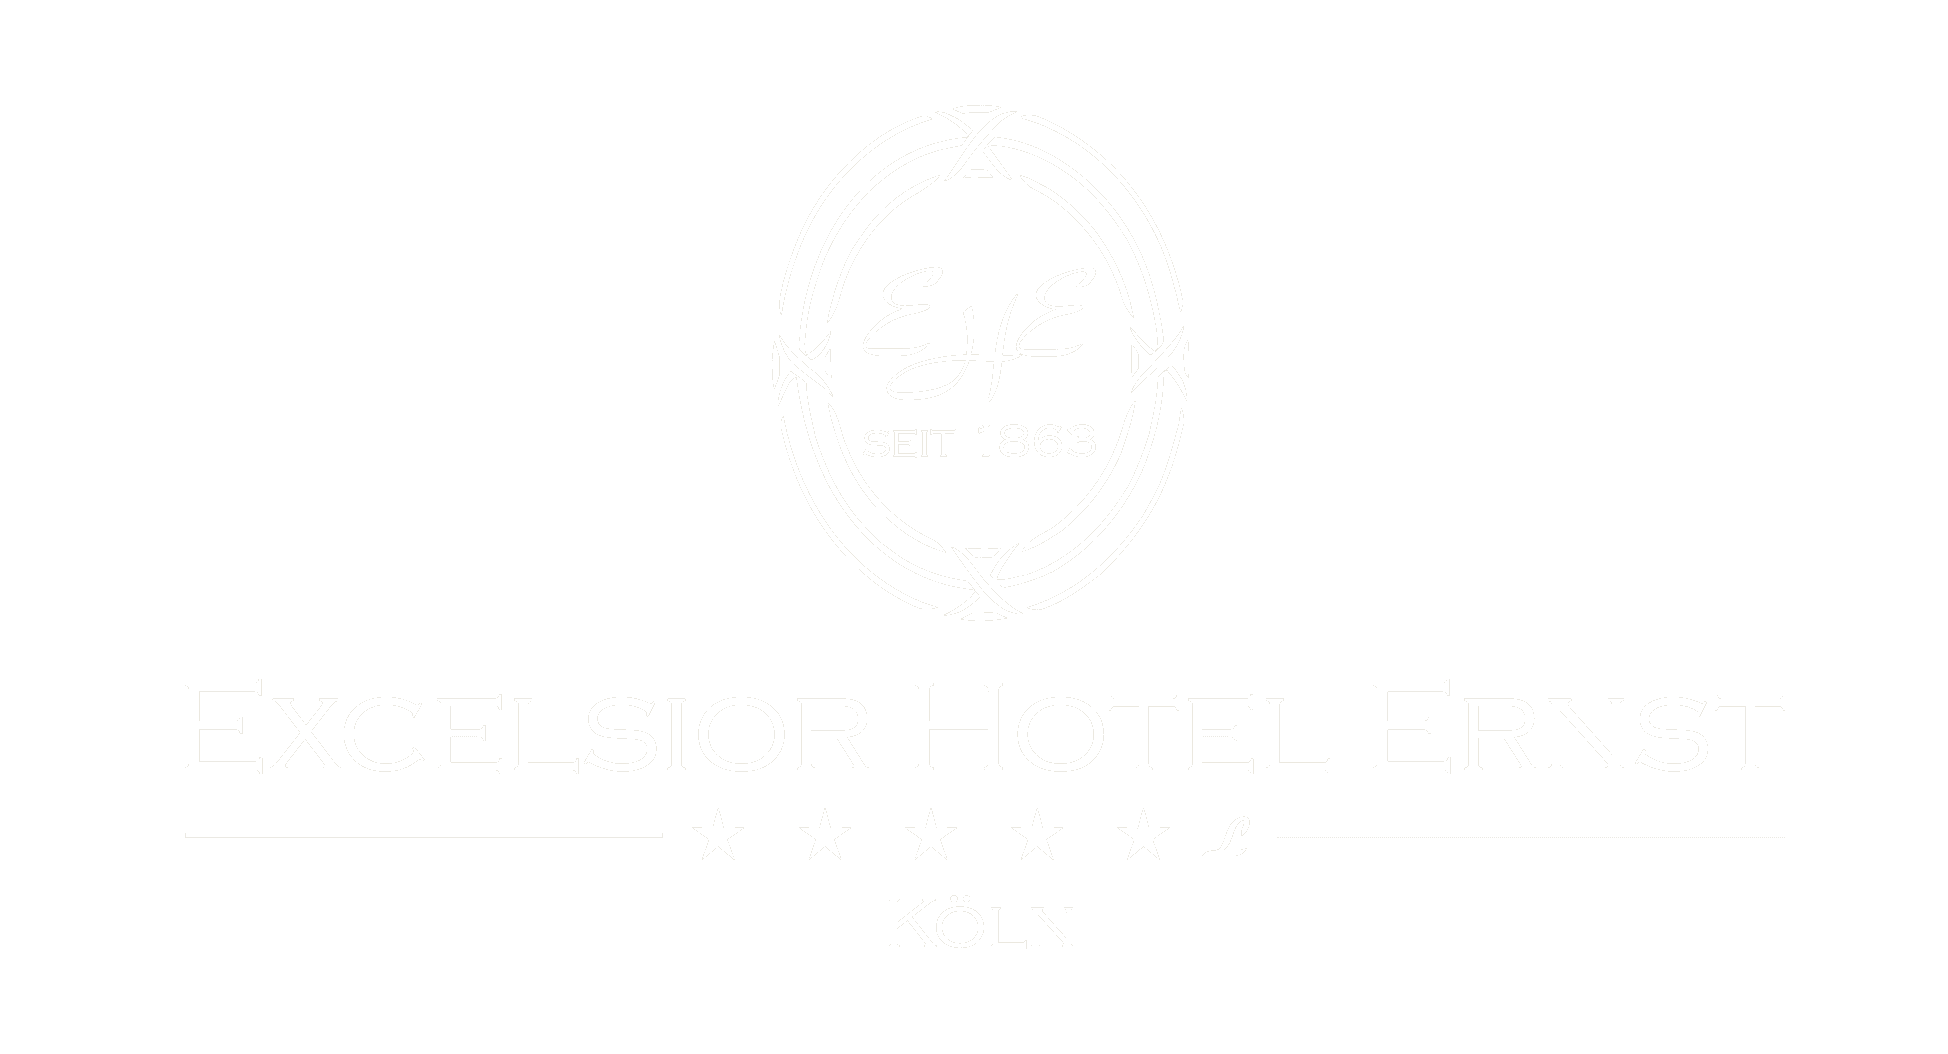 Logo Excelsior Hotel Ernst weiß auf grauem Hintergrund